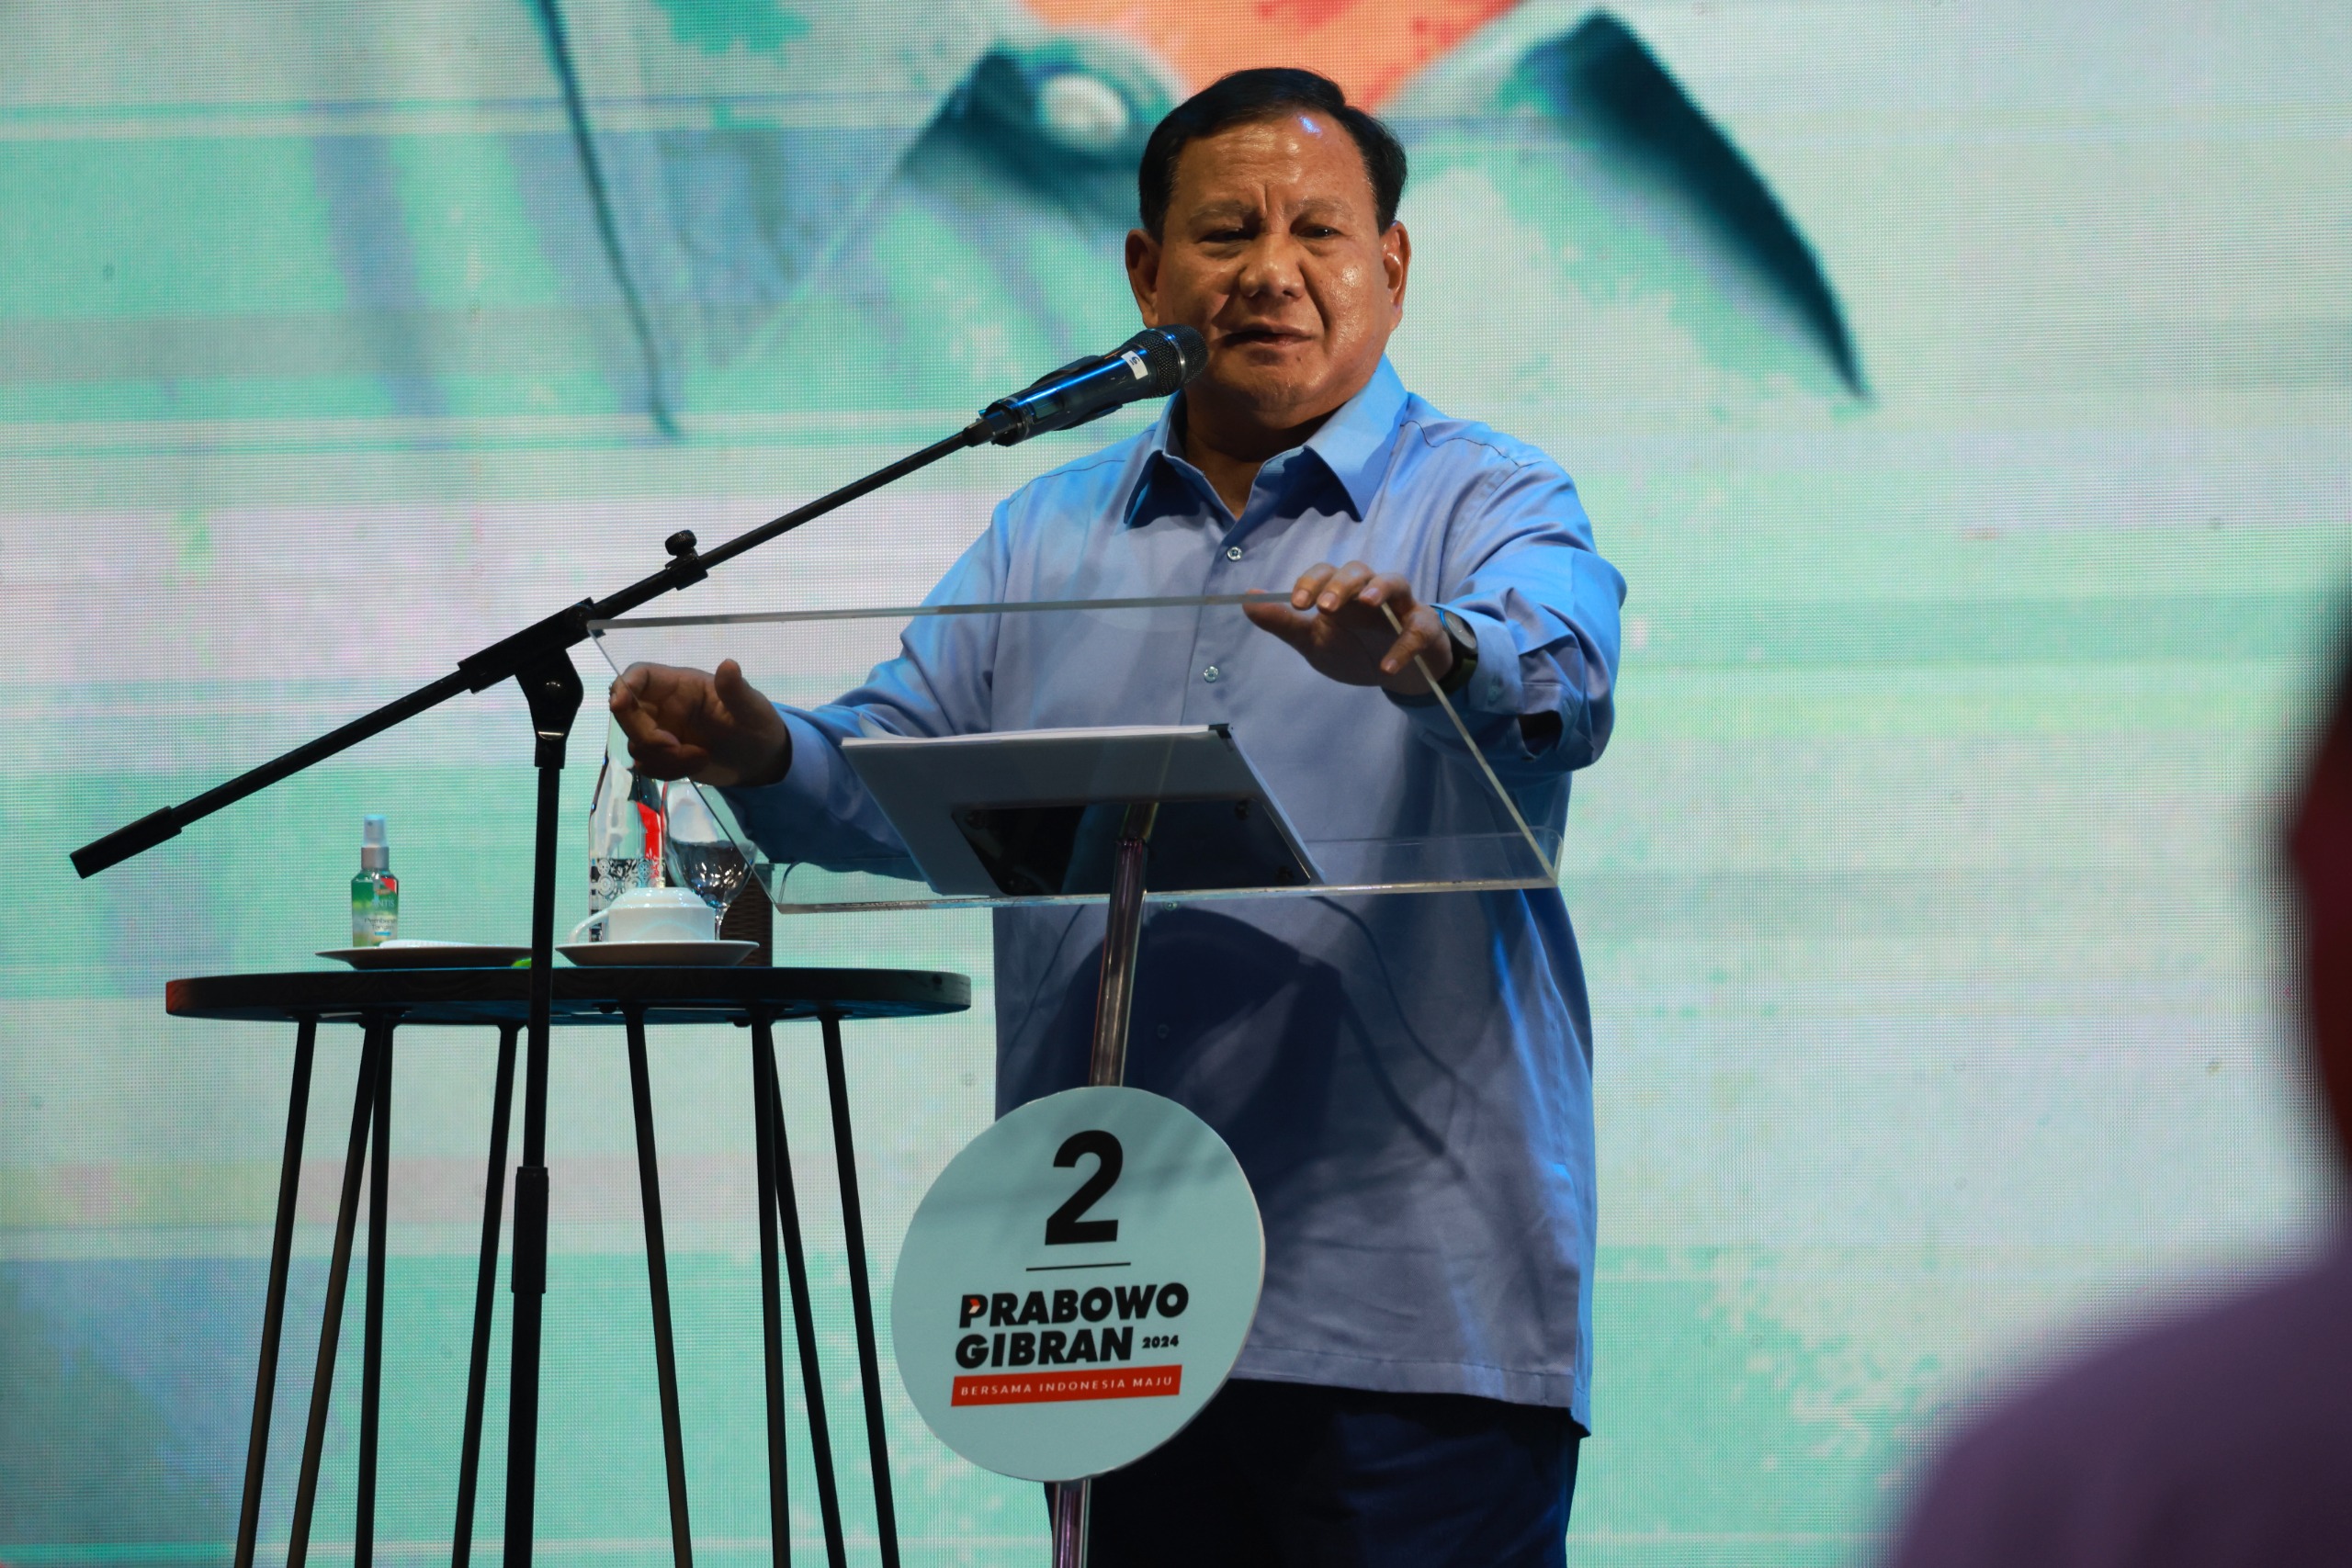 Selain Gemoy, Prabowo juga Tegas dan Penyayang, Kata Ketua TKD Jabar Ridwan Kamil 